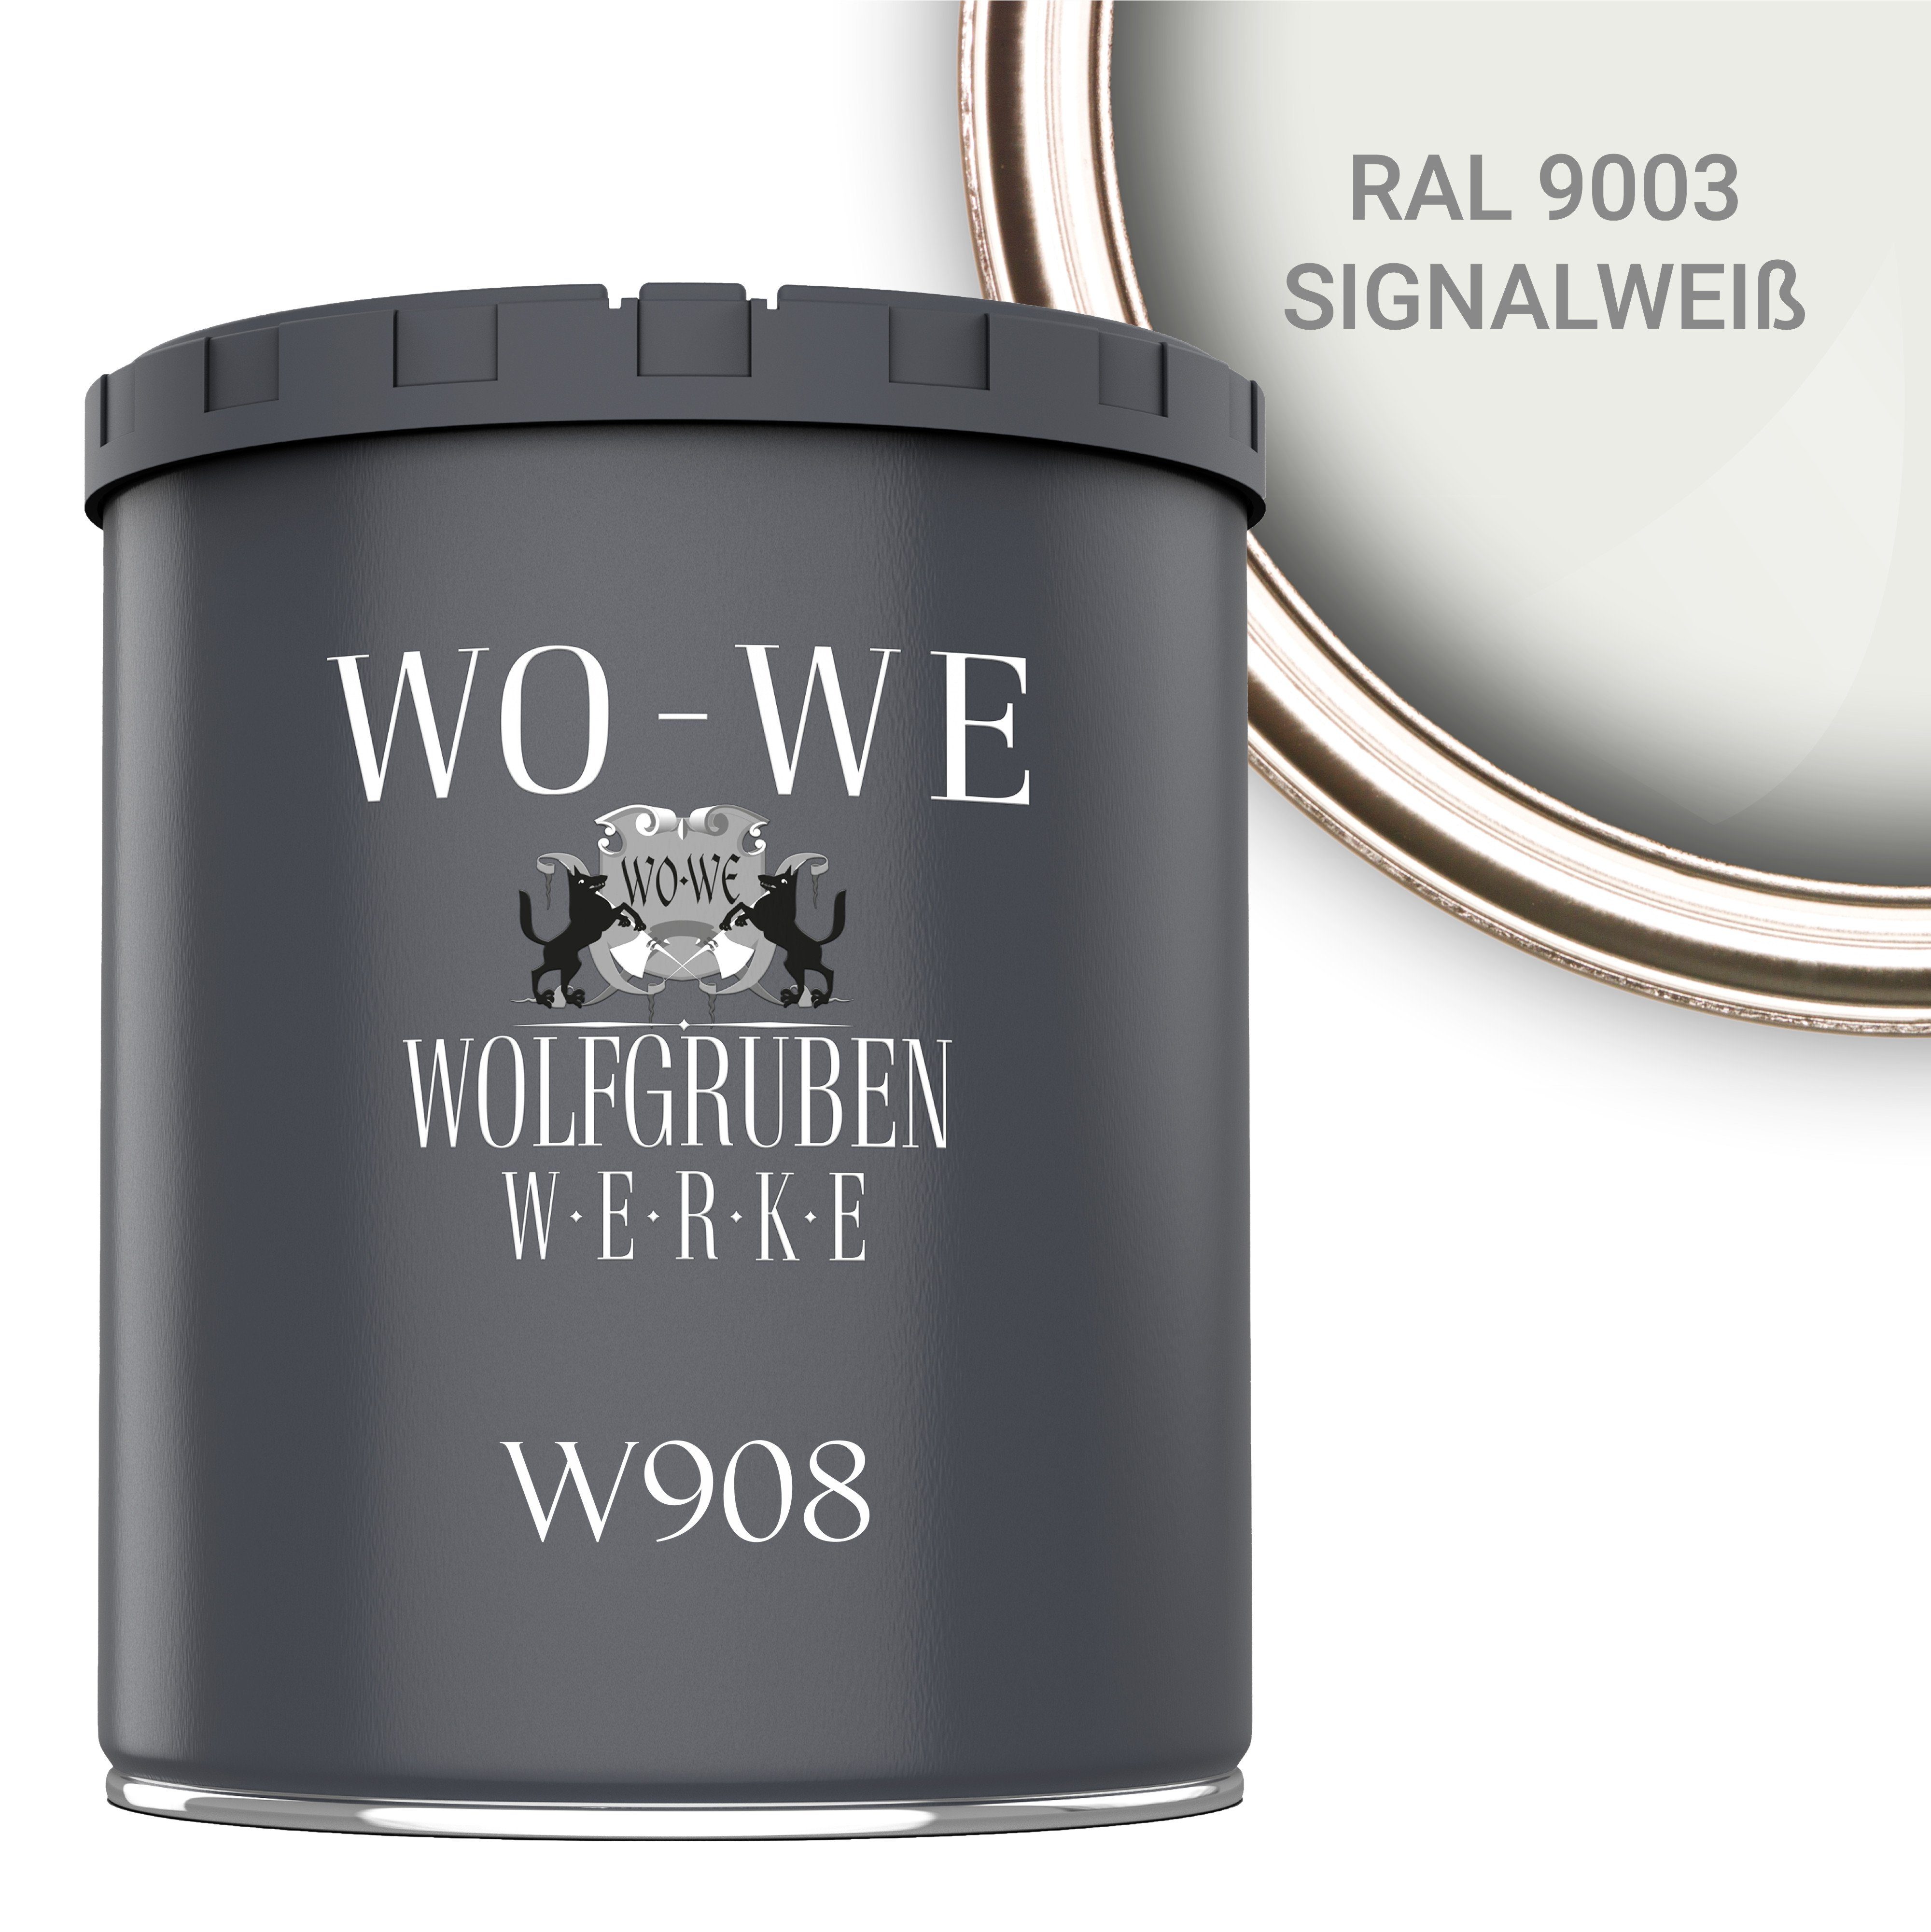 WO-WE Metallschutzlack 4in1 Metalllack 9003 RAL Metallschutzfarbe - 1L W908, 2,5L, Metallfarbe Signalweiß Außenbereich